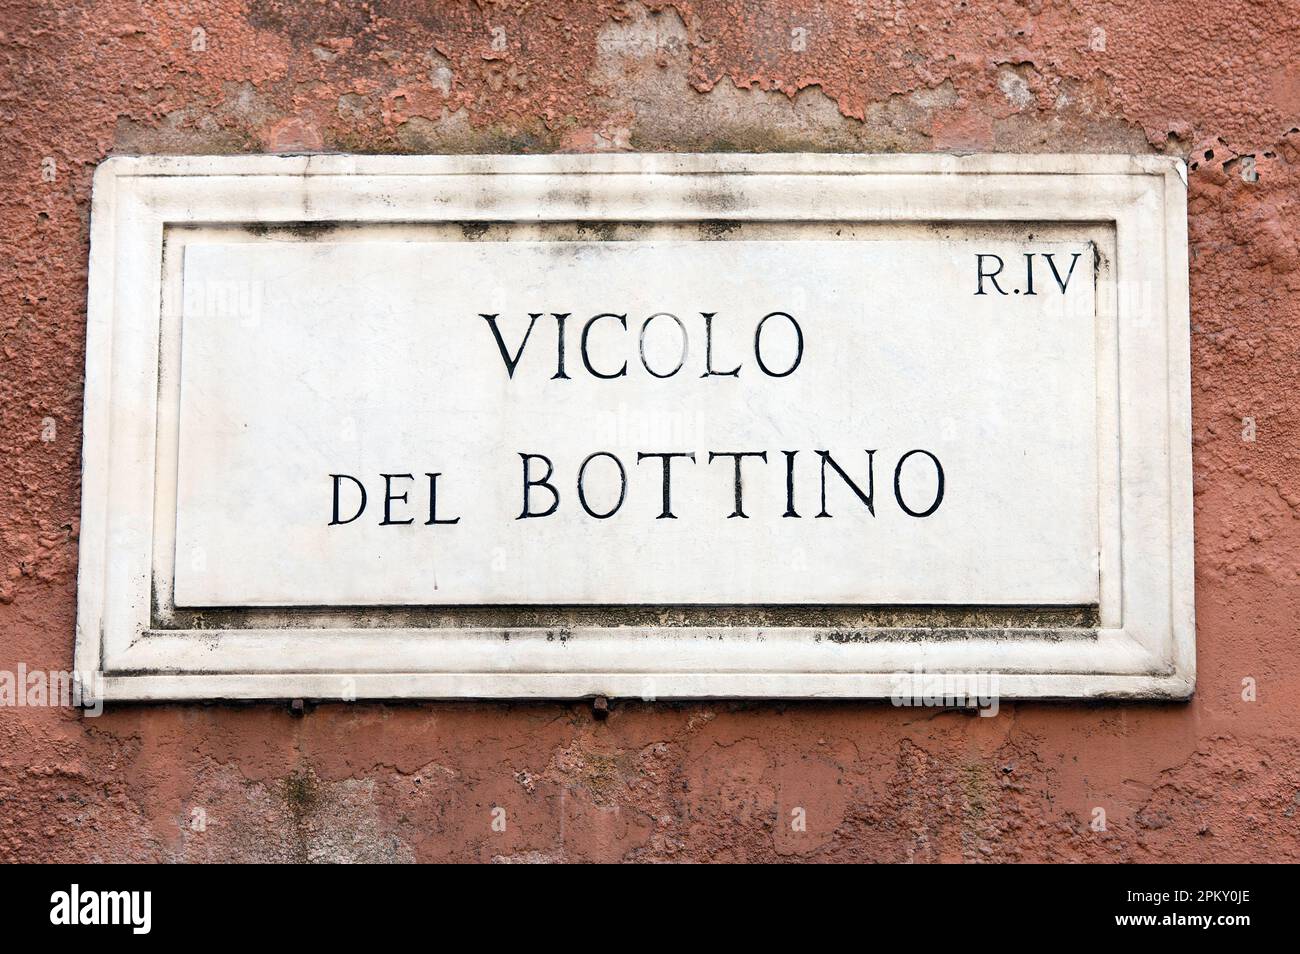 Vicolo del Bottino marble street sign, Rome, Italy Stock Photo